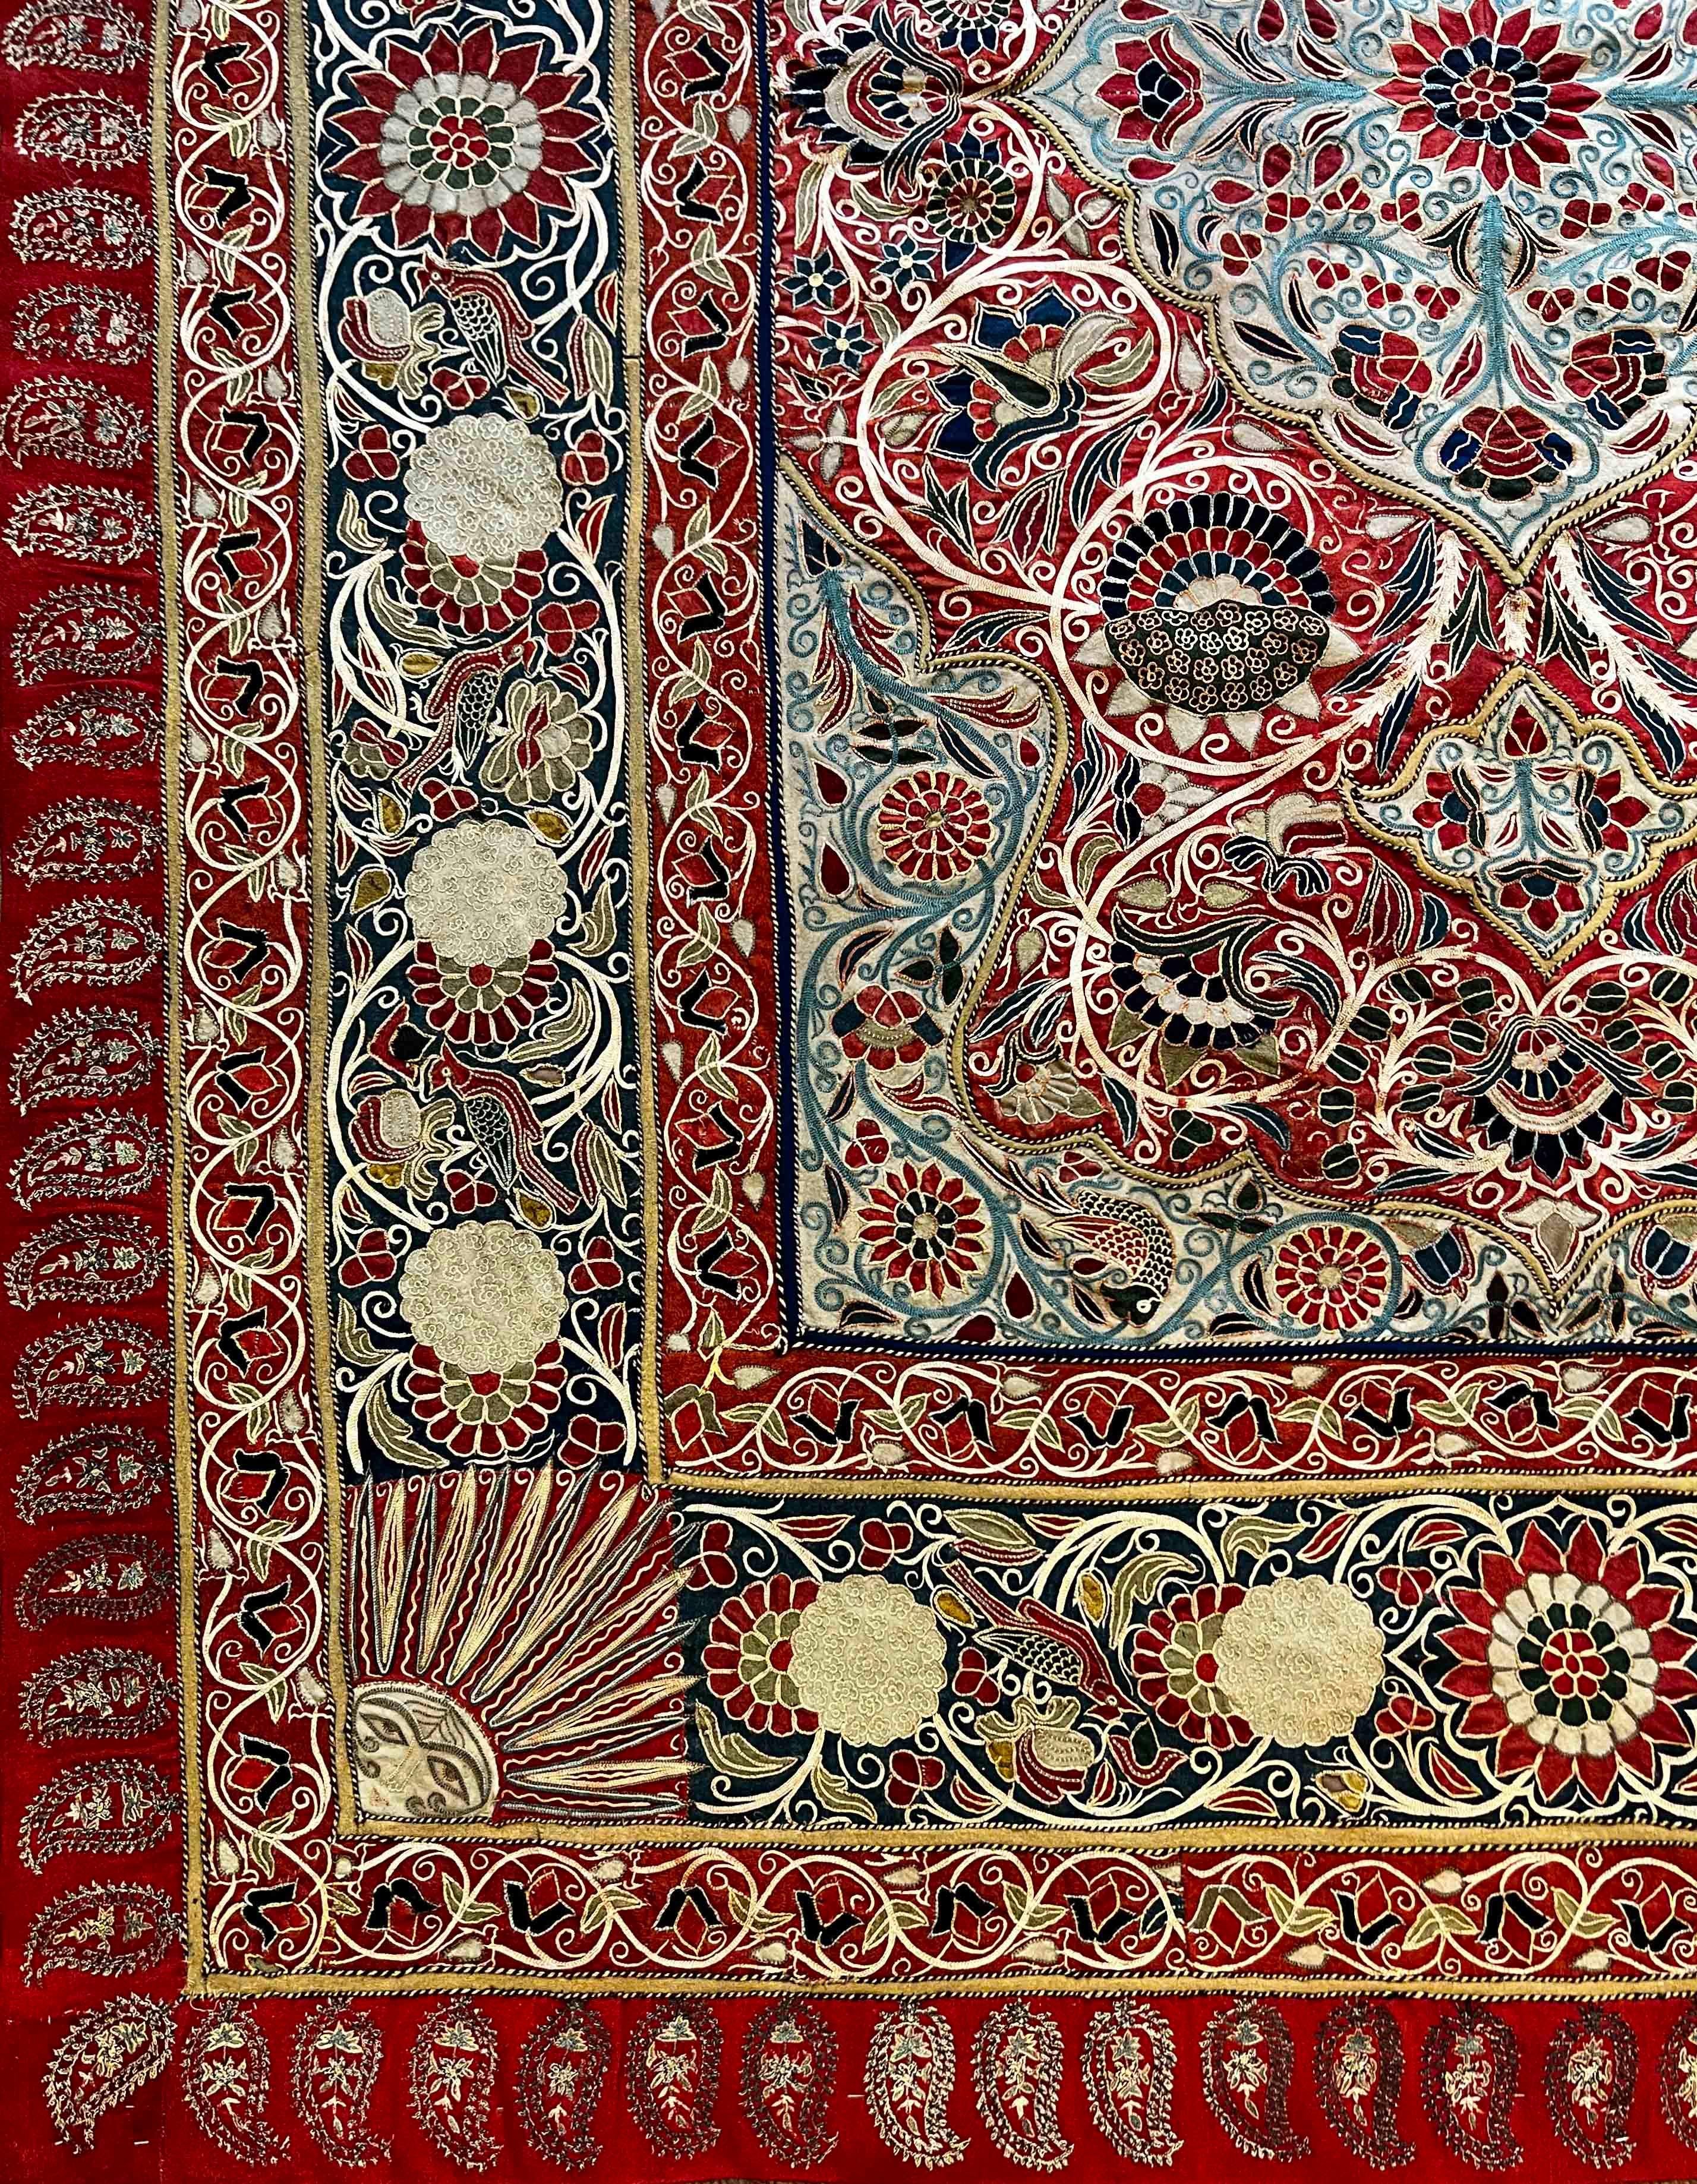 Tribal Persian Decorative Fabric of 19th century  (RESHT) Rashtidouzi - N°1215 For Sale